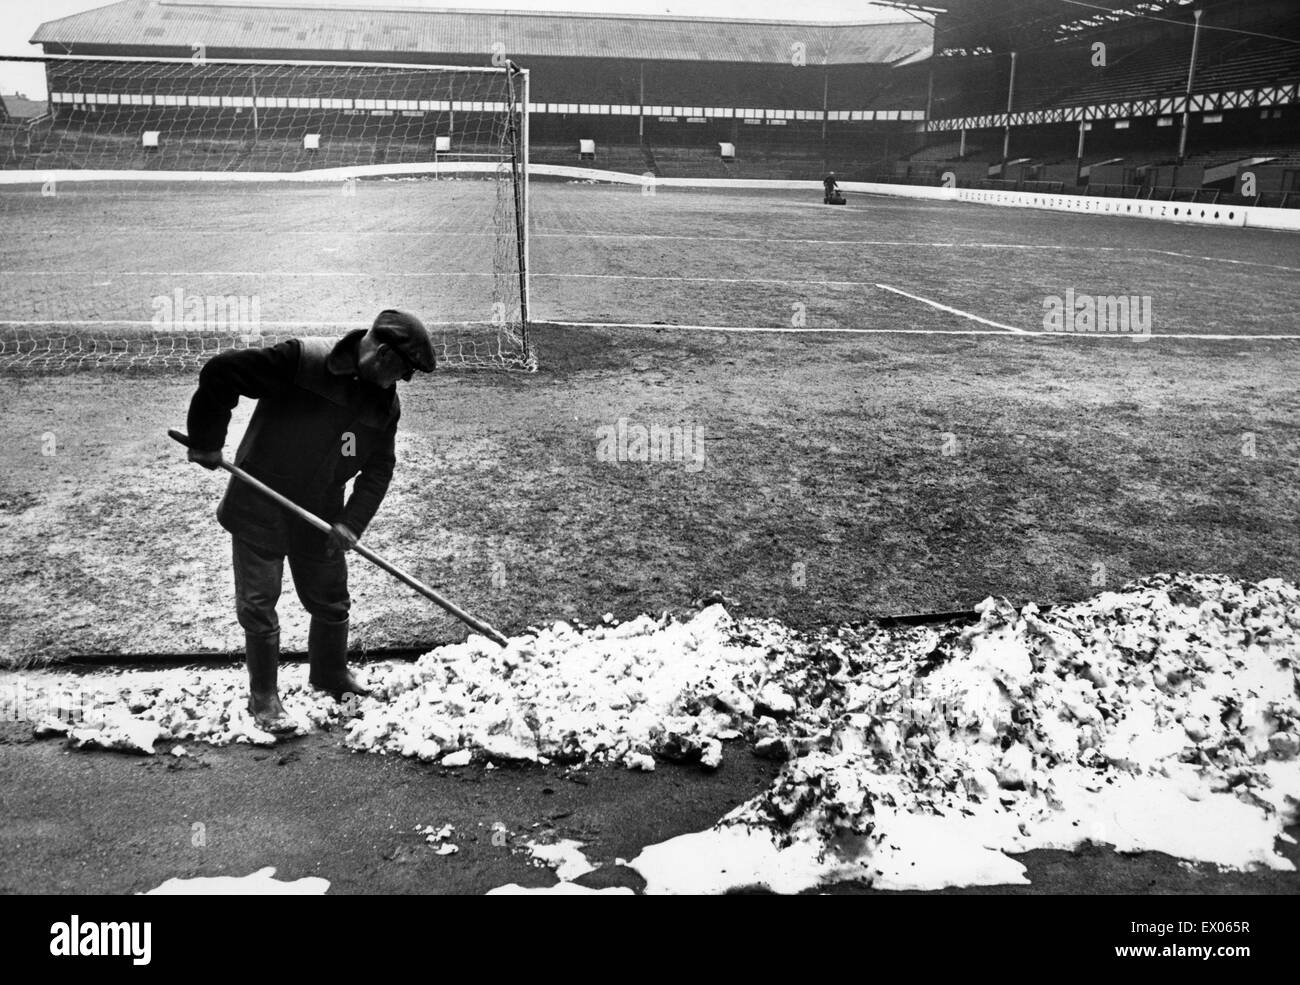 De Goodison Park, home à Everton FC, le stade de football est situé dans la région de Walton, Liverpool, Angleterre. 11 février 1969. L'autorisation de la neige à partir de la hauteur. Banque D'Images